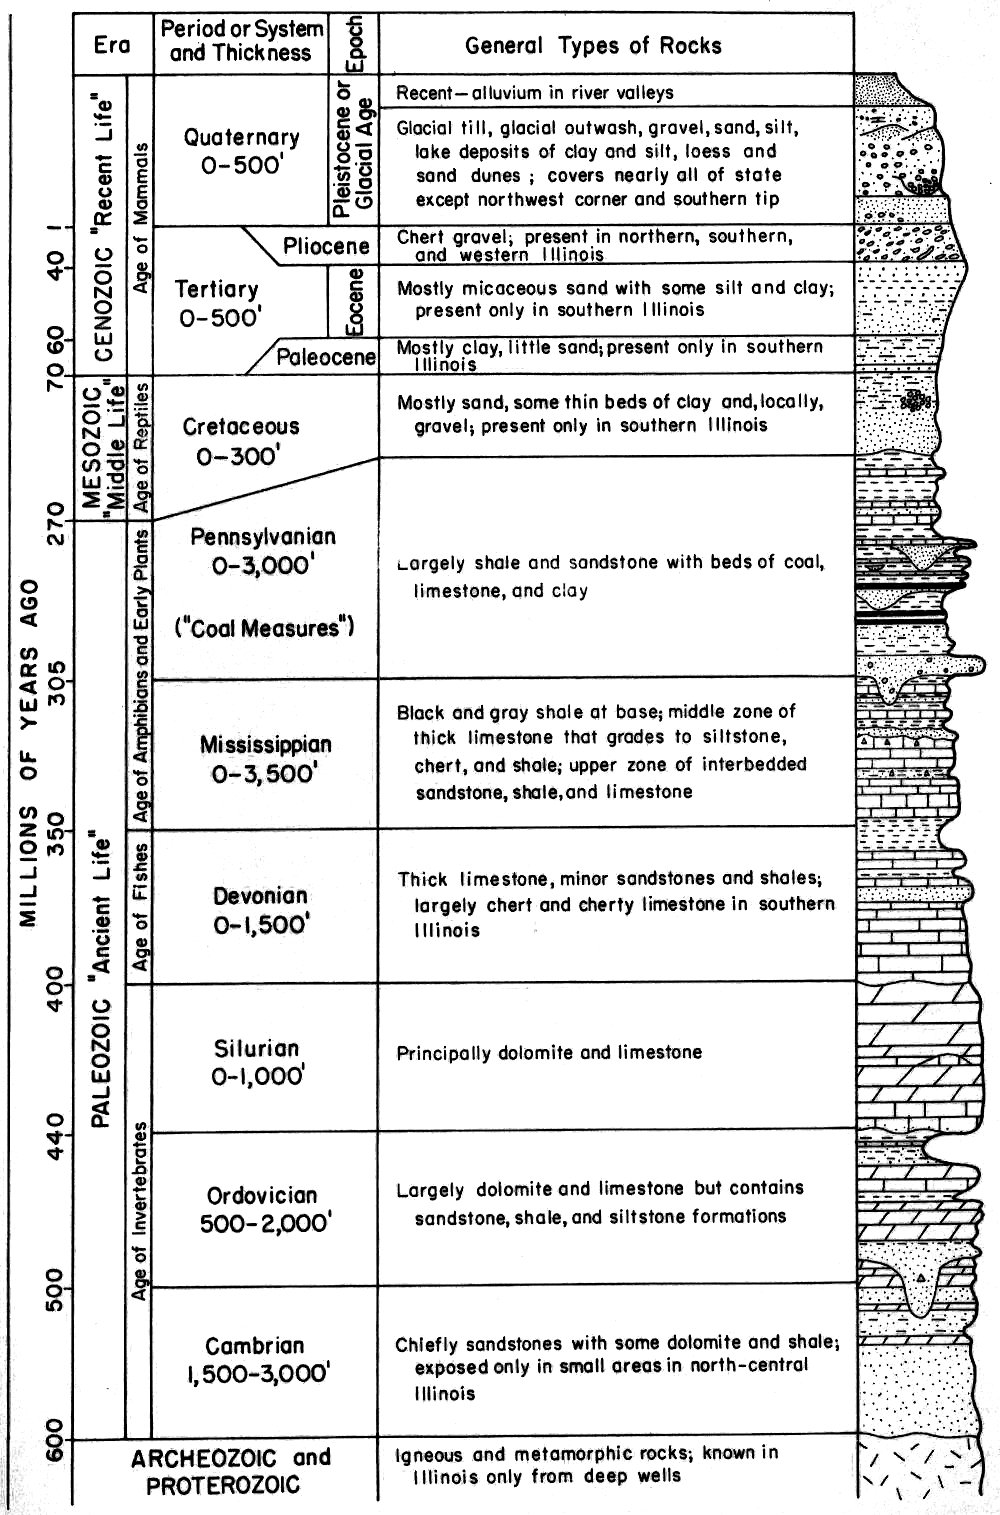 Geologic column